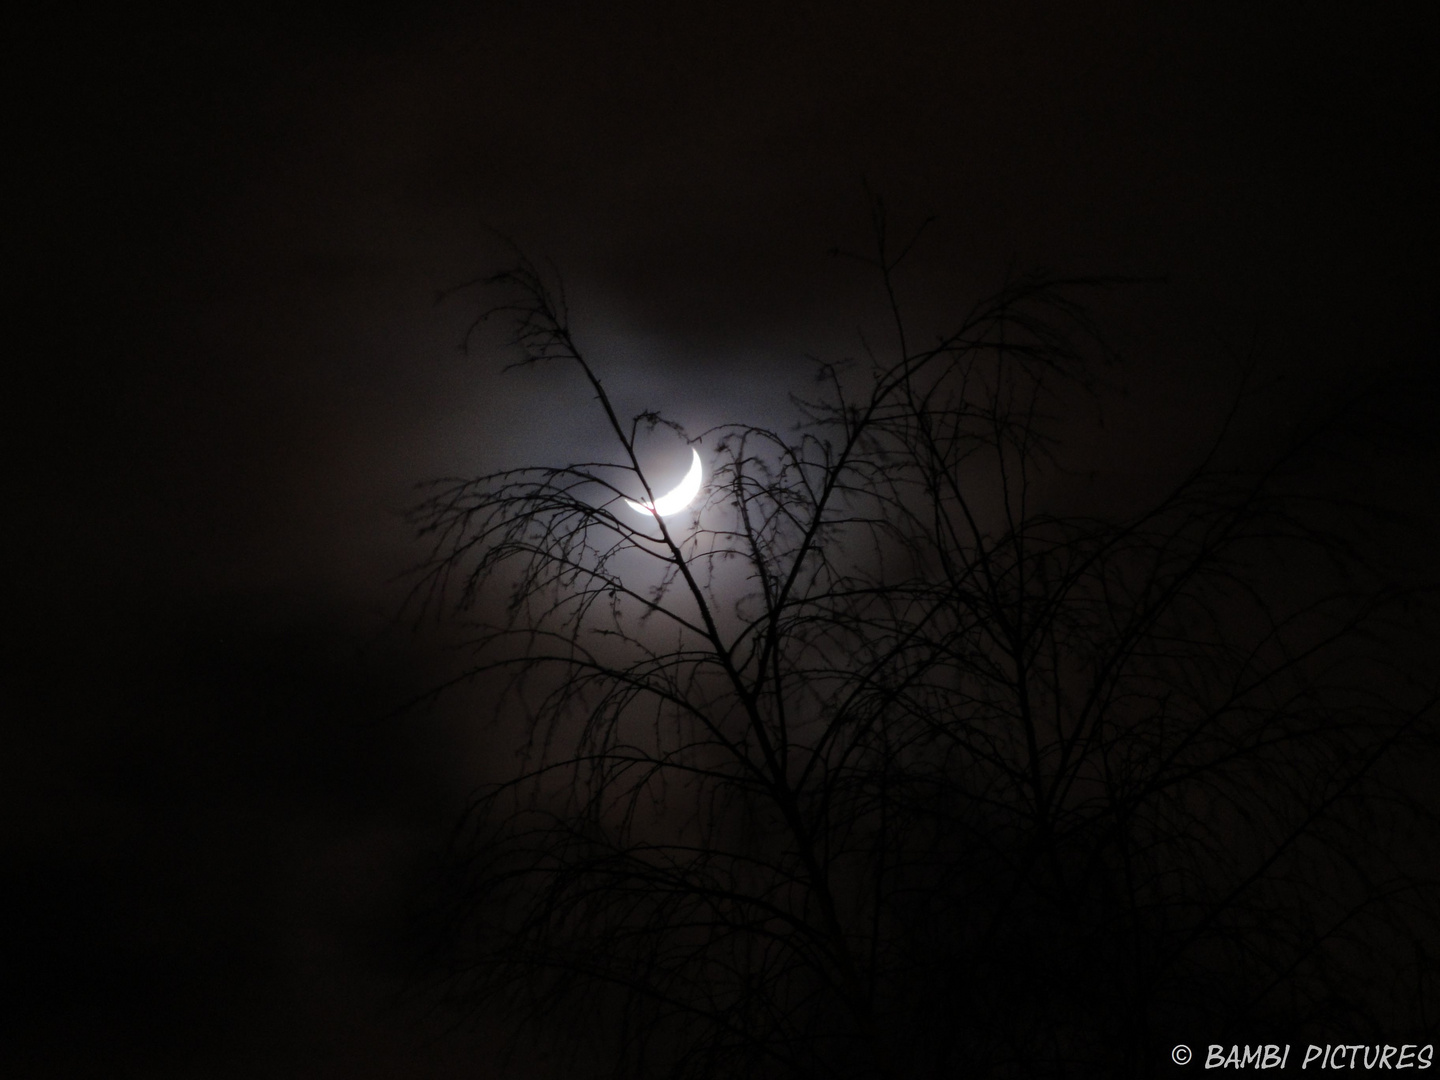 Dunkel war’s, der Mond schien helle...